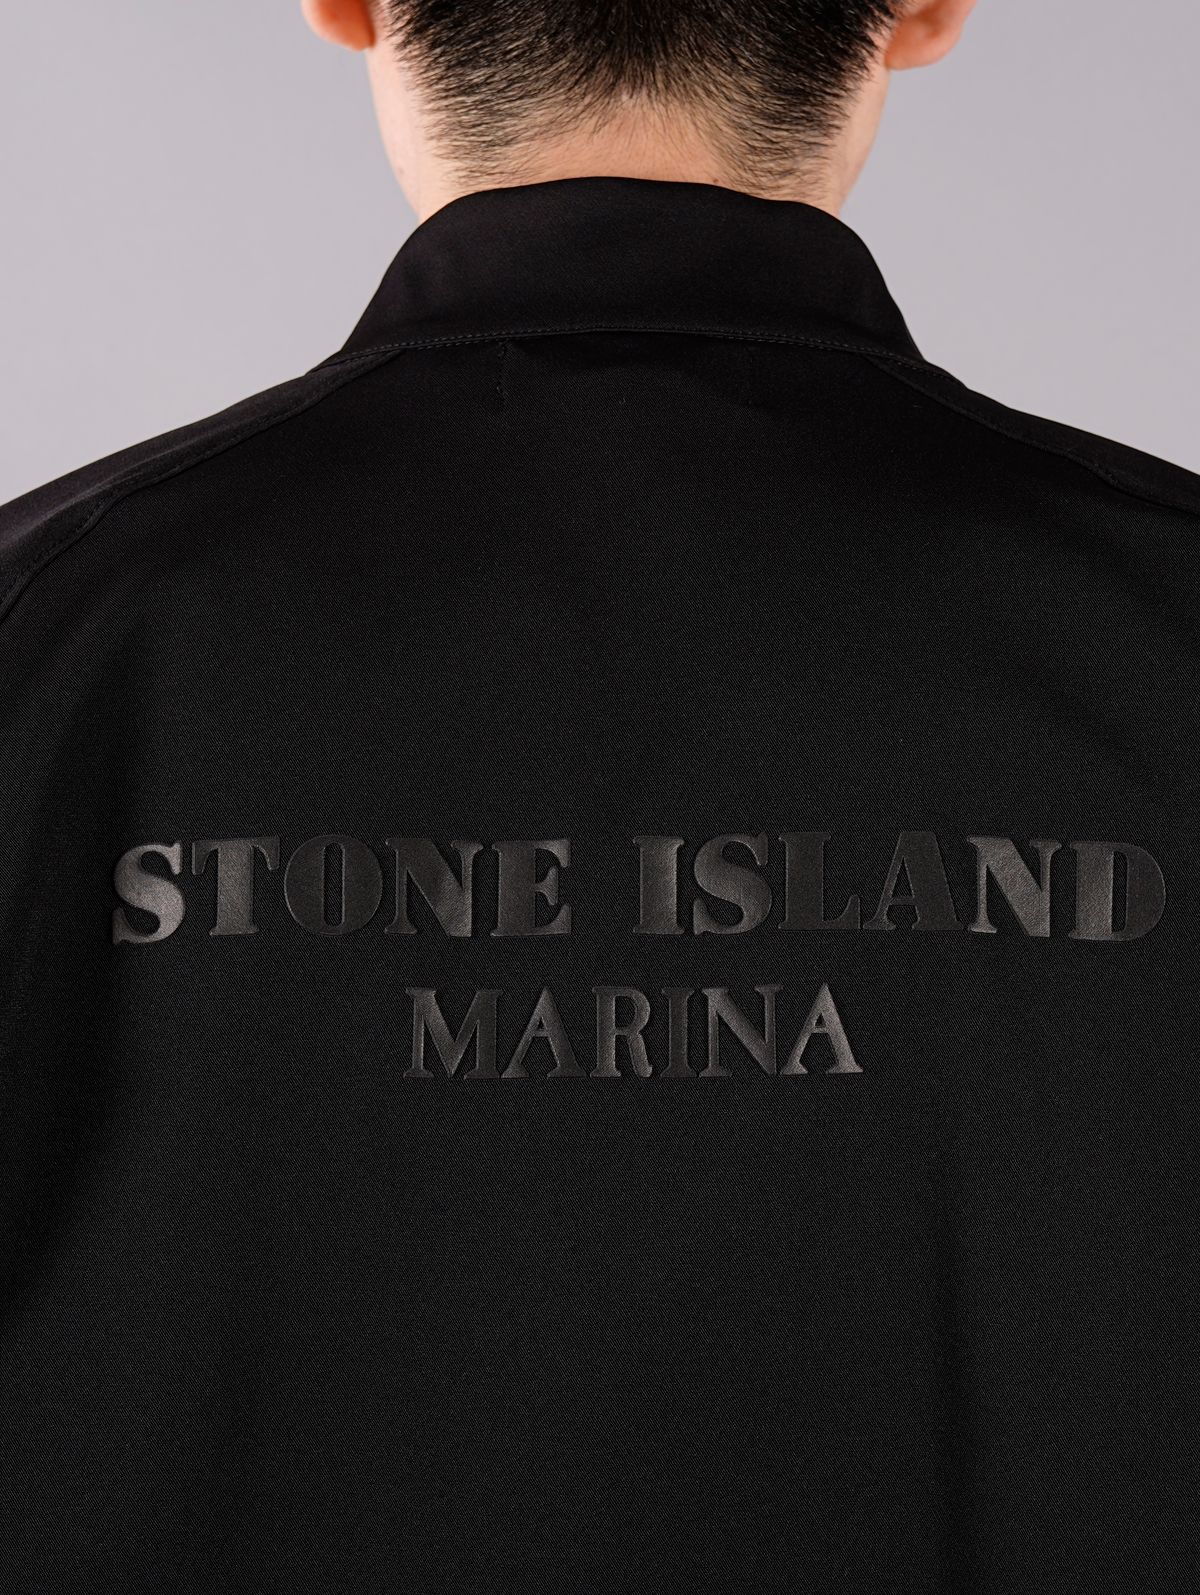 STONE ISLAND - STONE ISLAND MARINA TWO WAYS STRETCH RECYCLED NYLON